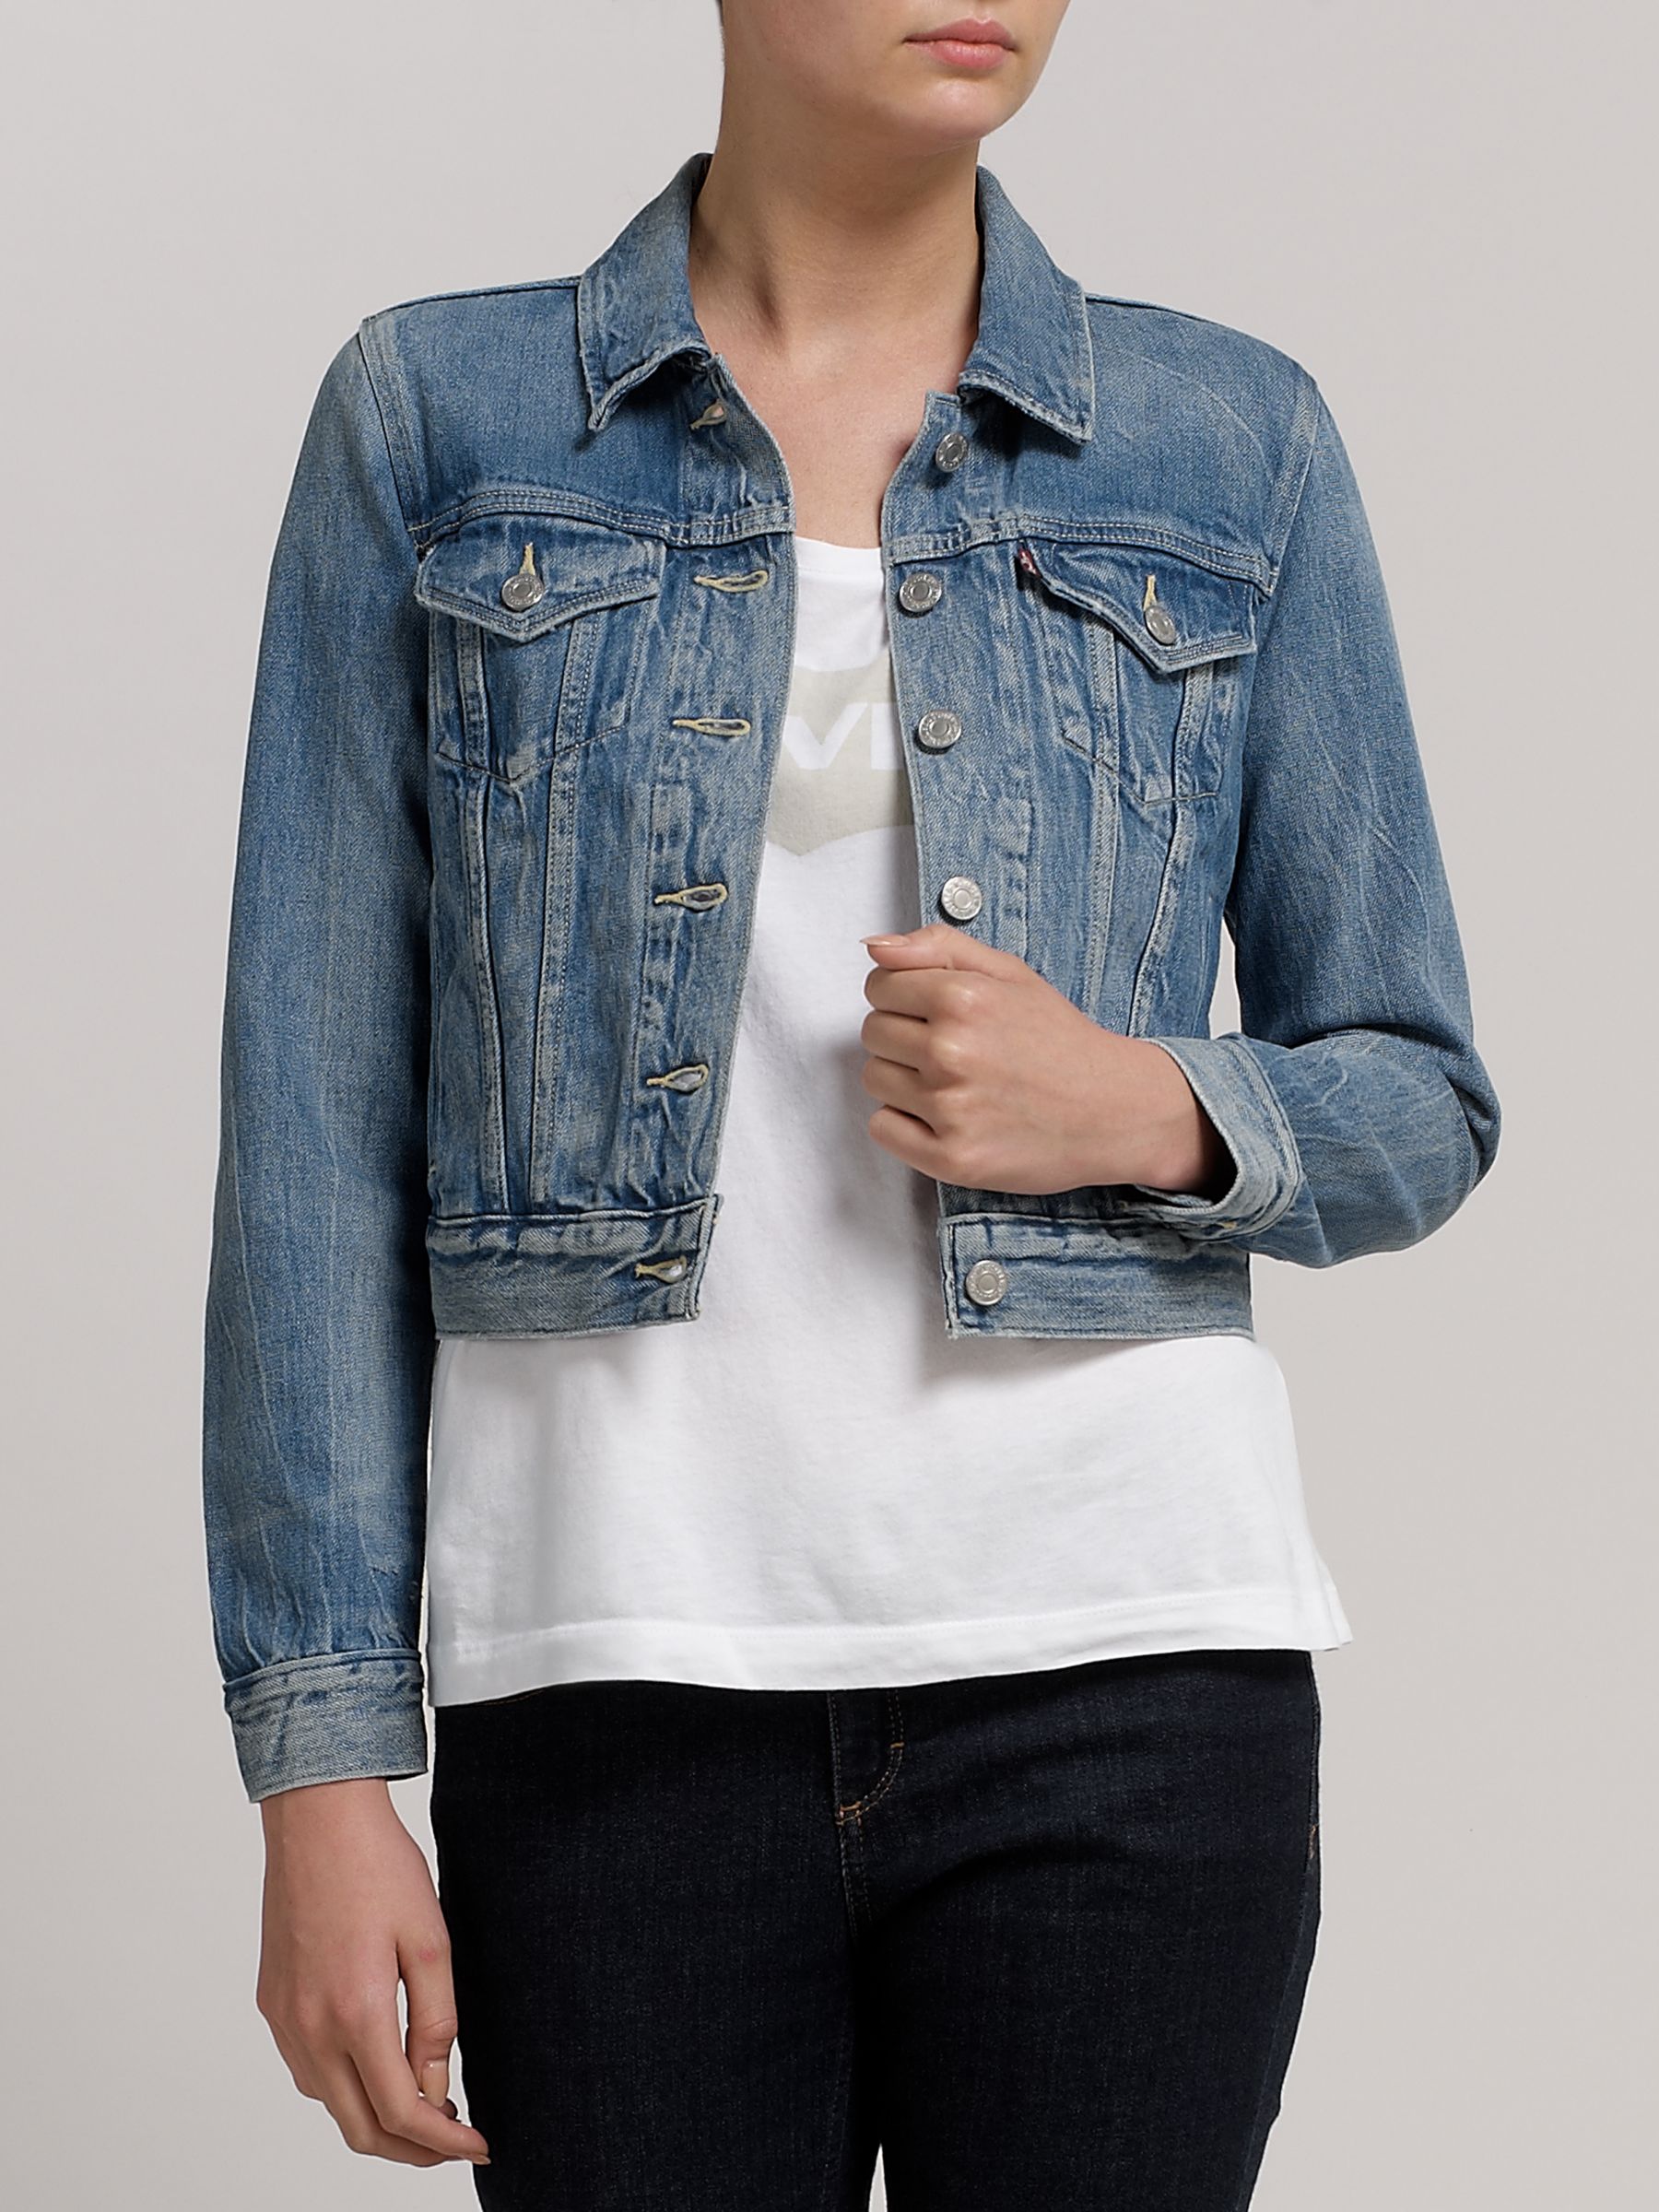 authentic levi jean jacket